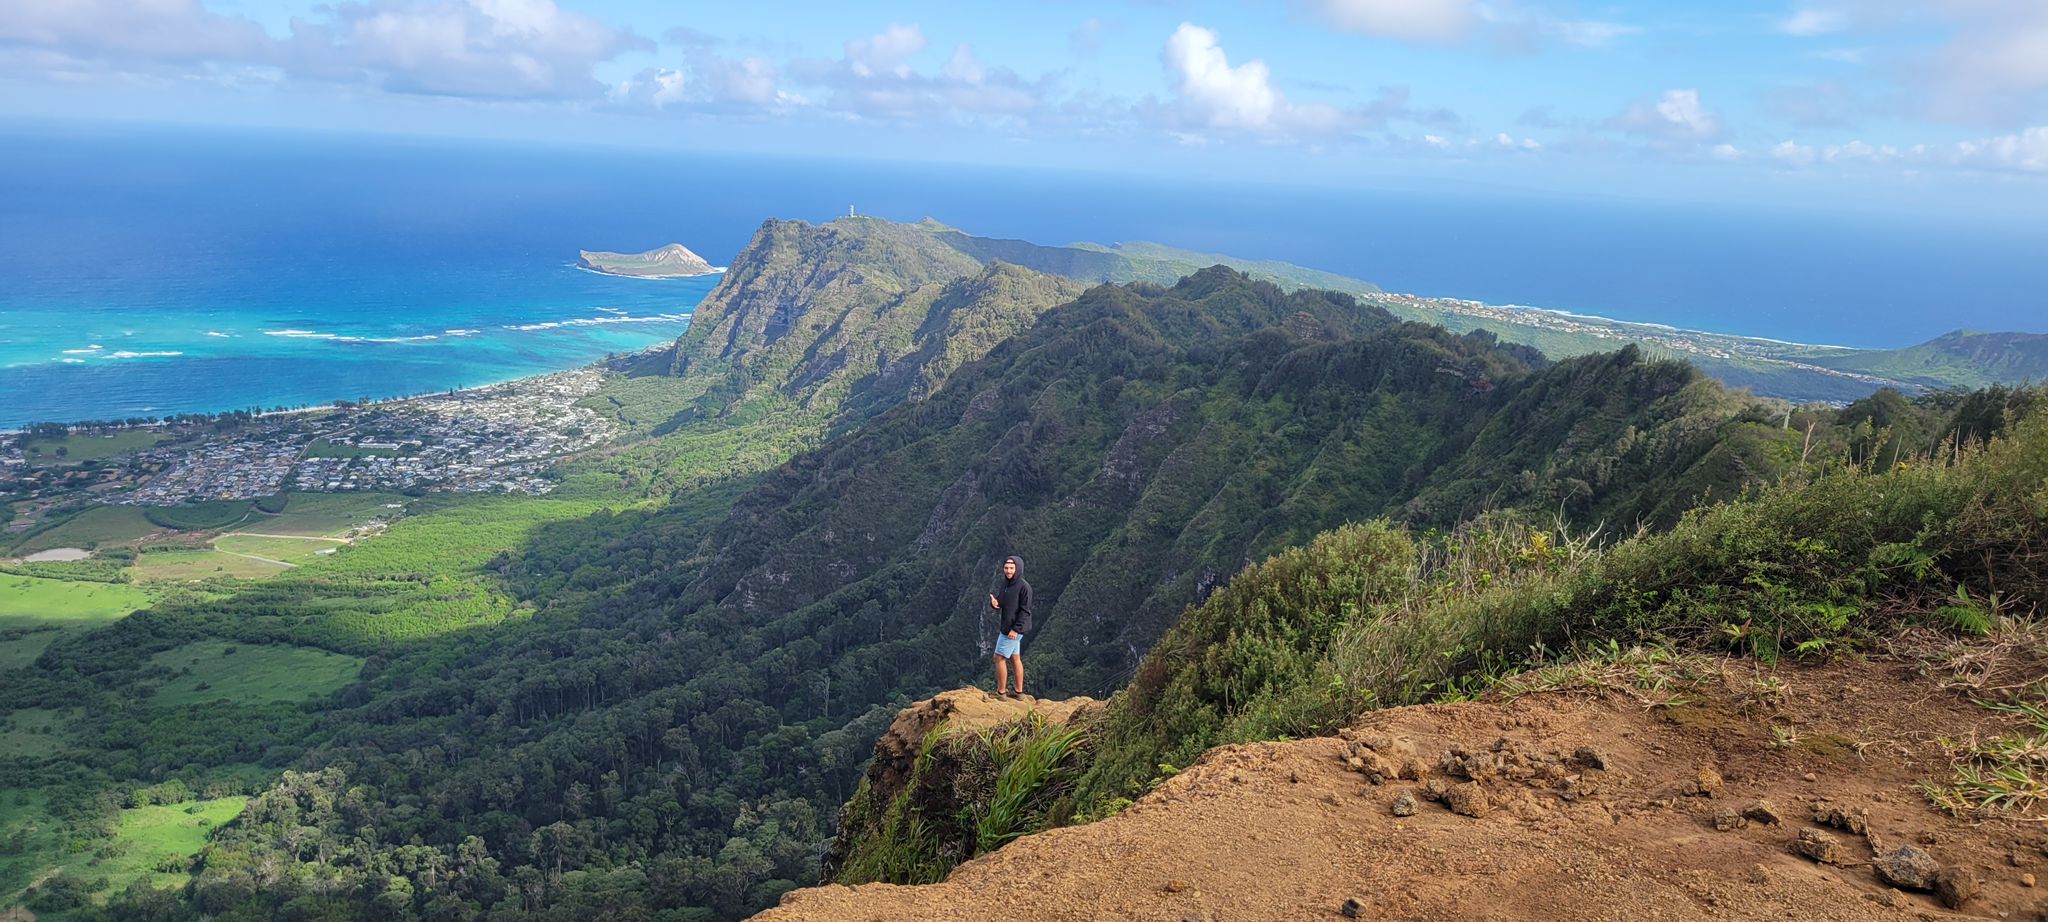 Роберт Давтян покоряет вершины карьеры на Гавайях. Фото из личного архива